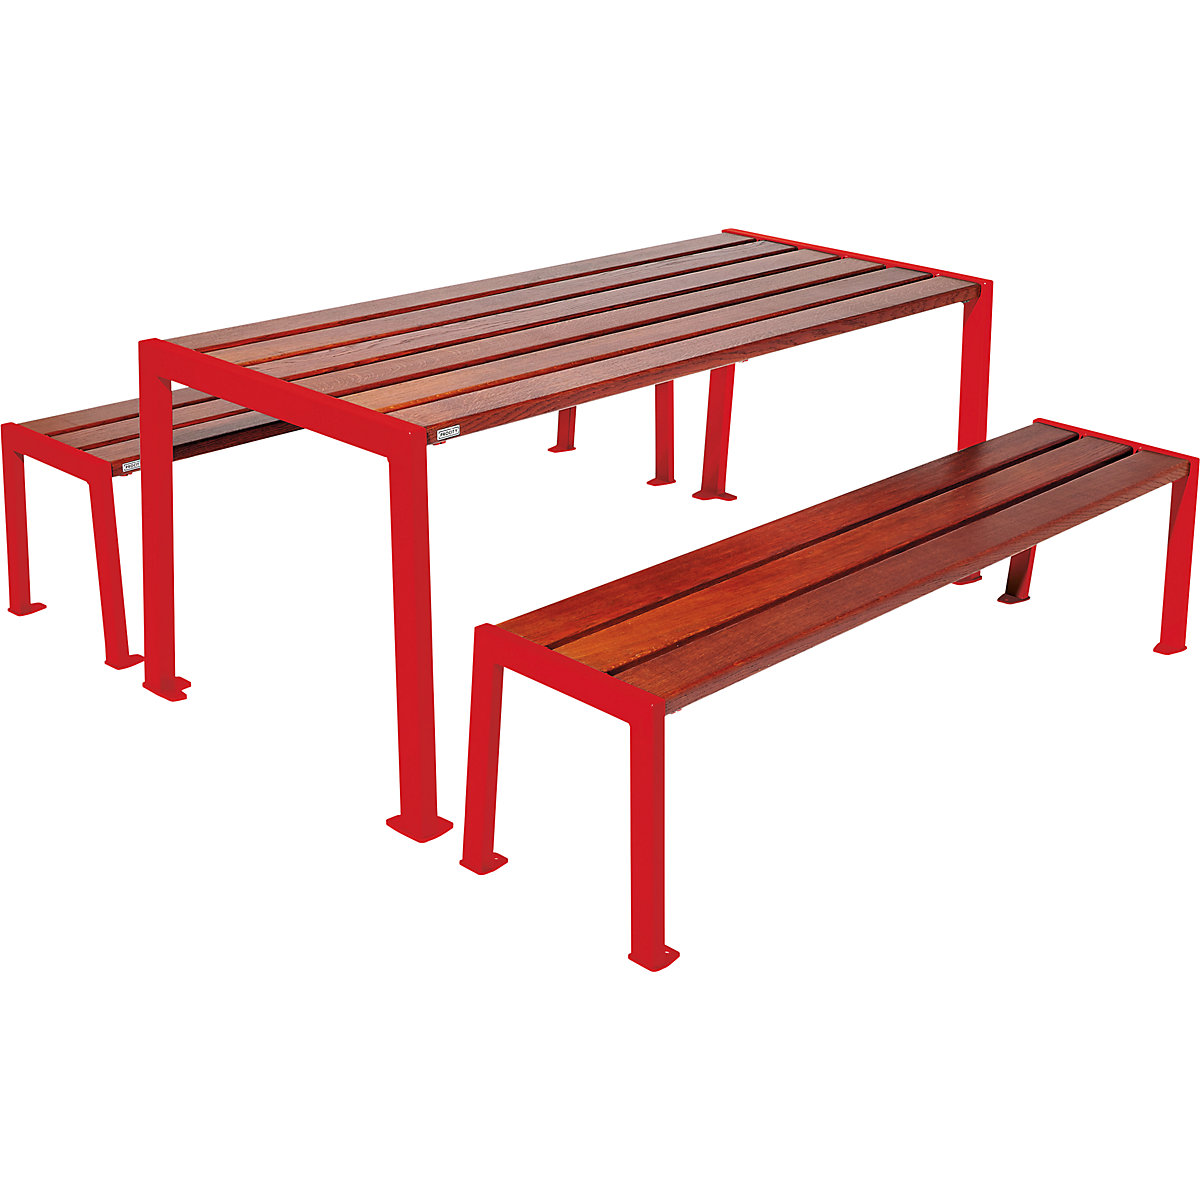 Garnitura mize in klopi Silaos® – PROCITY, dolžina 1800 mm, rdeče barve / mahagoni-10